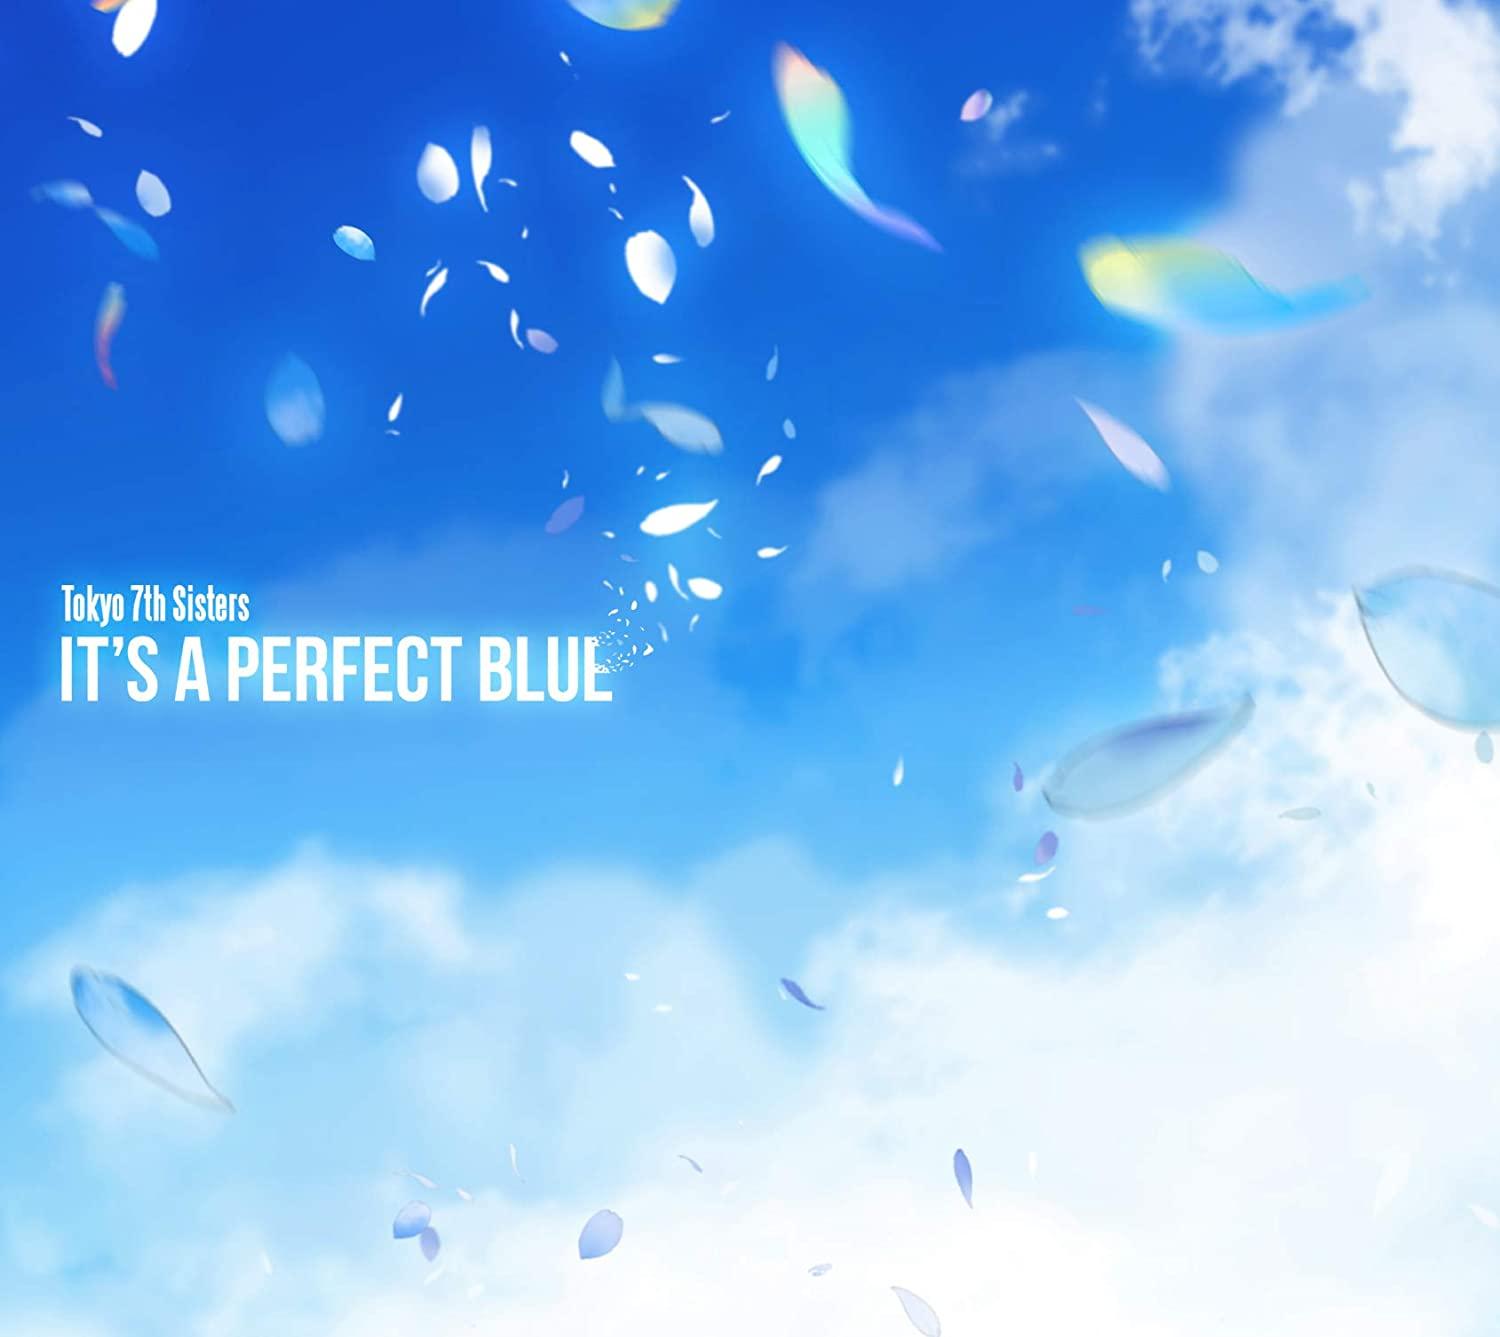 ITfS A PERFECT BLUE(Tokyo 7th VX^[Y